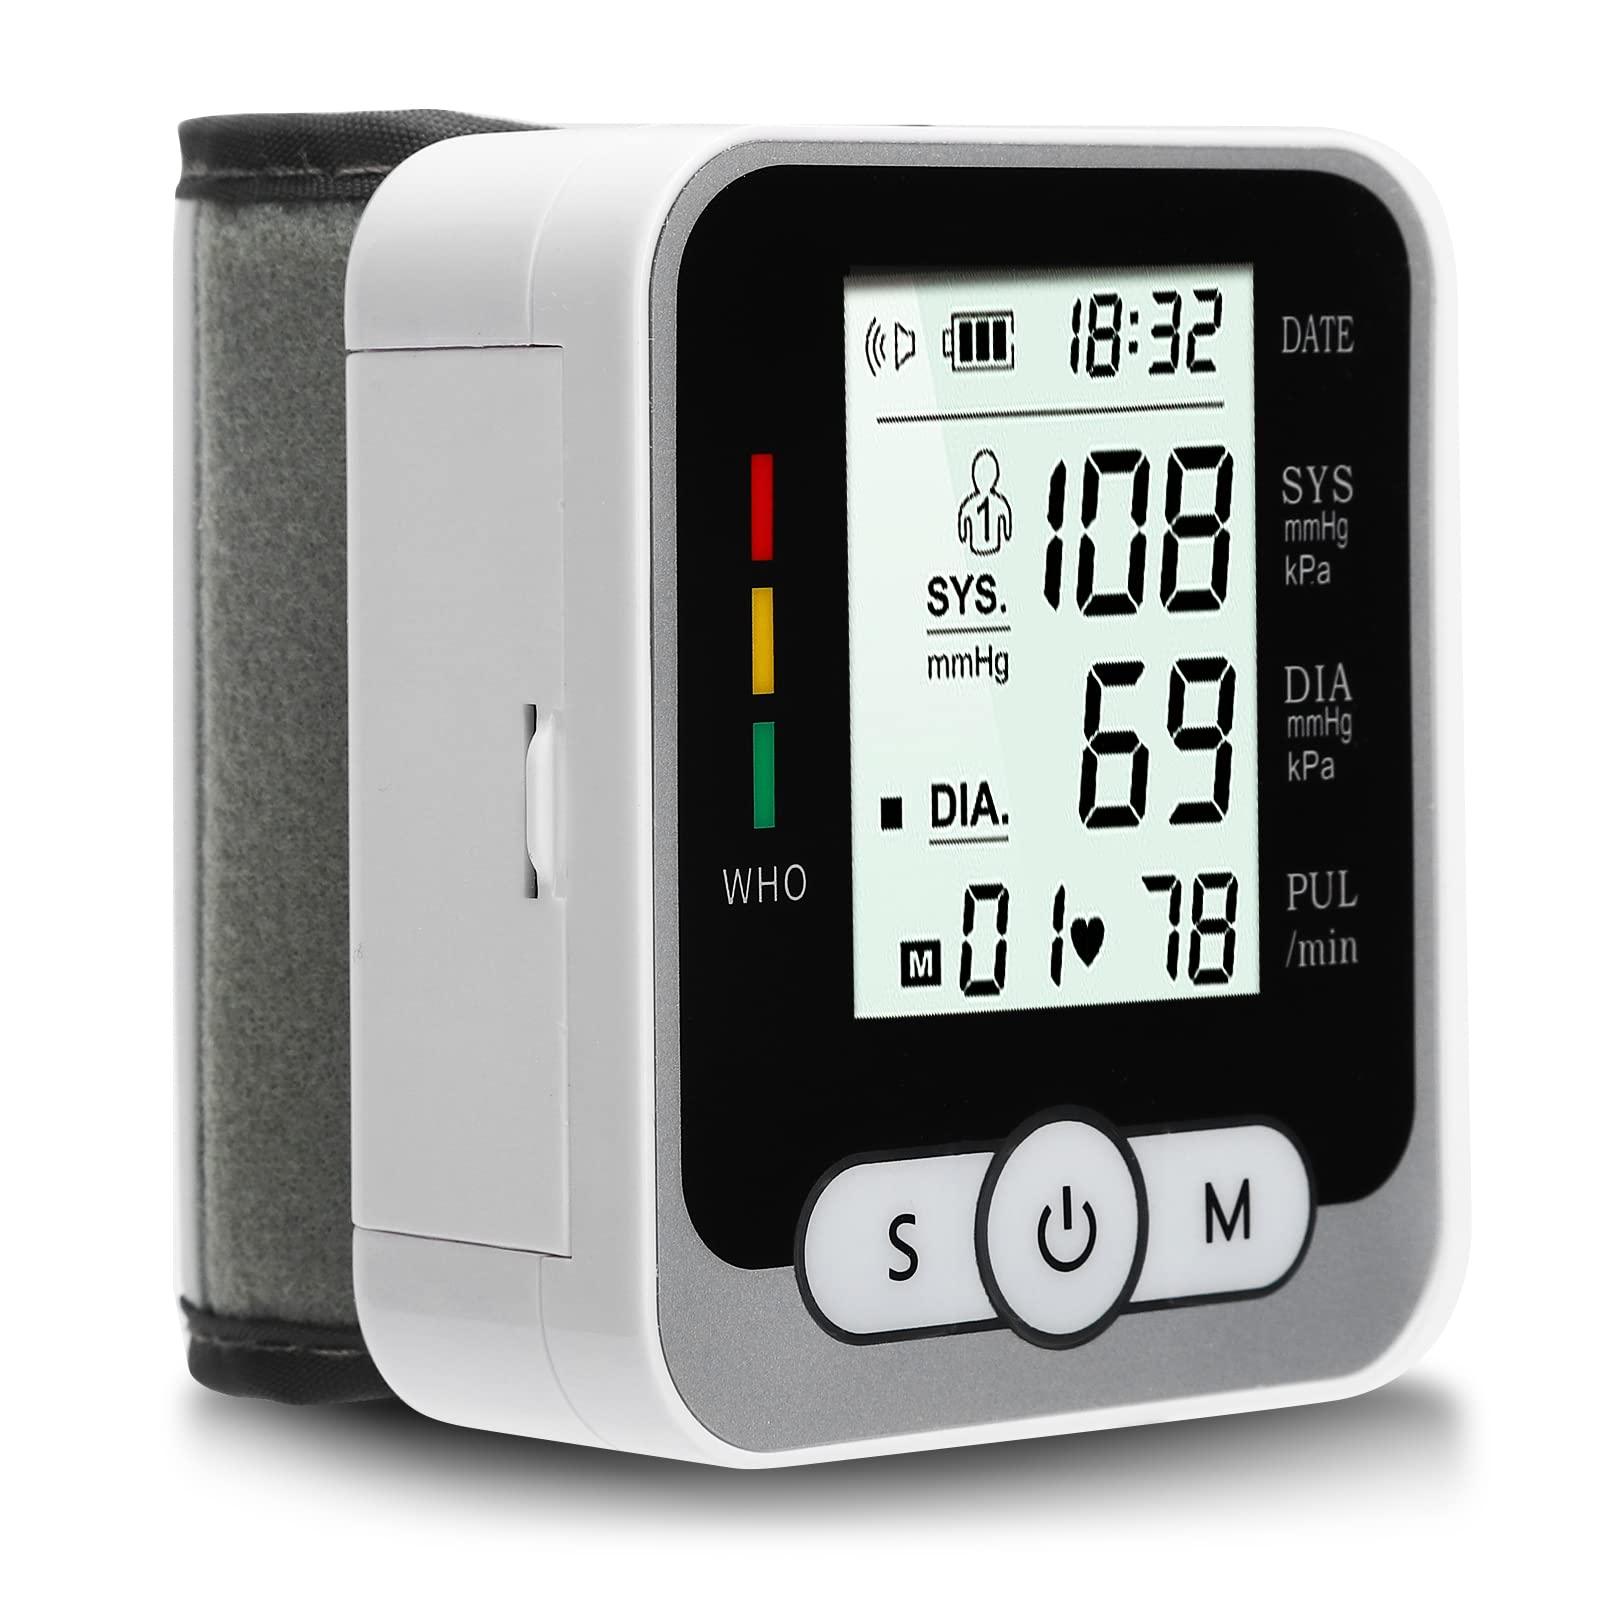 Sonew Professionelles-Handgelenk Blutdruckmessgerät, Blutdruckmessgerät für das Handgelenk mit LCD Bildschirm, Sprachübertragung, Gesunder Detektor für Alte Menschen